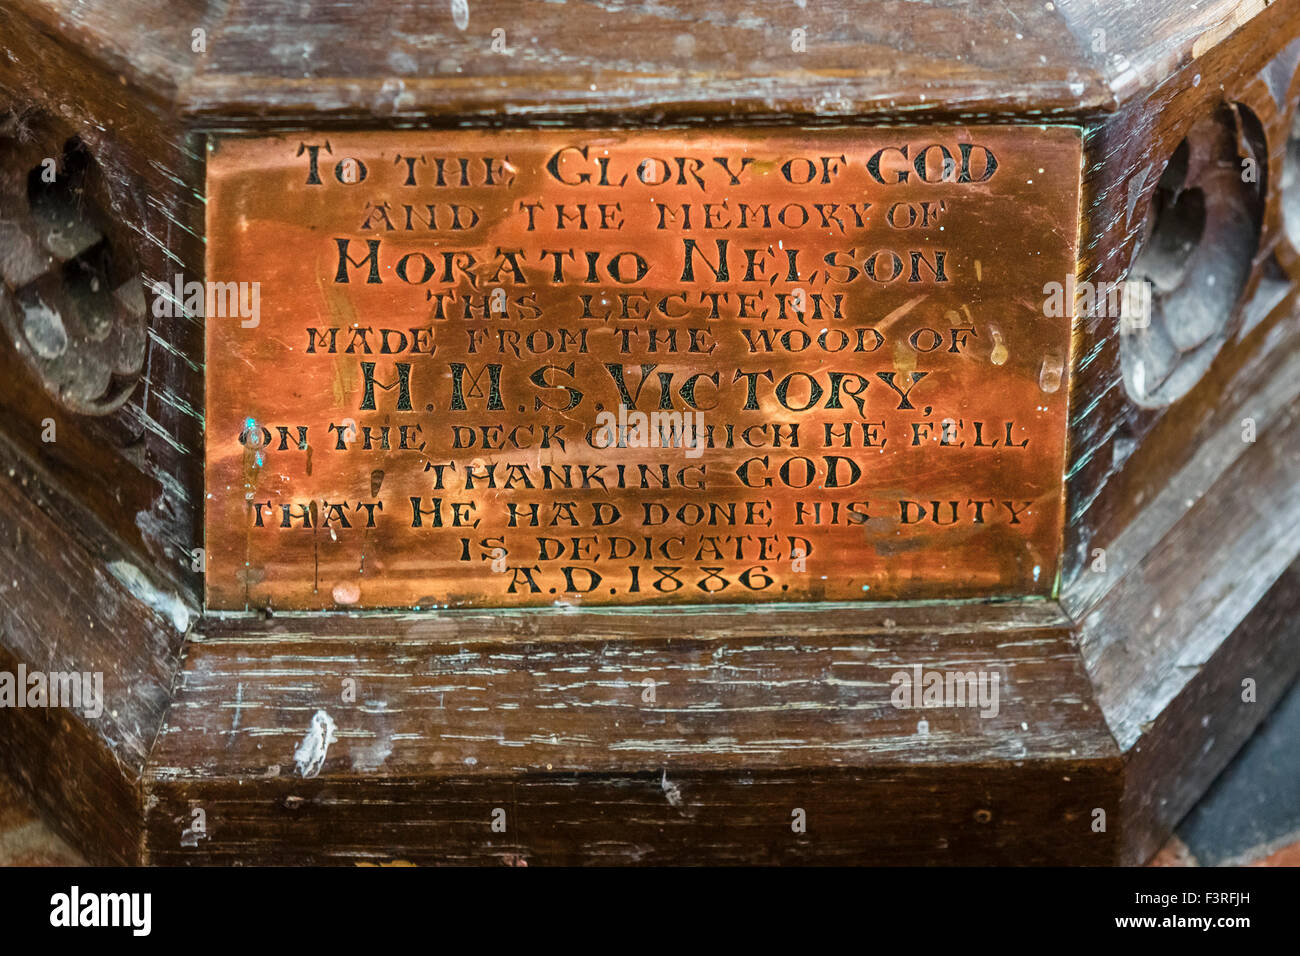 La placca sul leggio nella Chiesa di Tutti i Santi, realizzato dal legno di Nelson nave ammiraglia HMS Victory, Burnham Thorpe, Norfolk, Inghilterra, Regno Unito Foto Stock